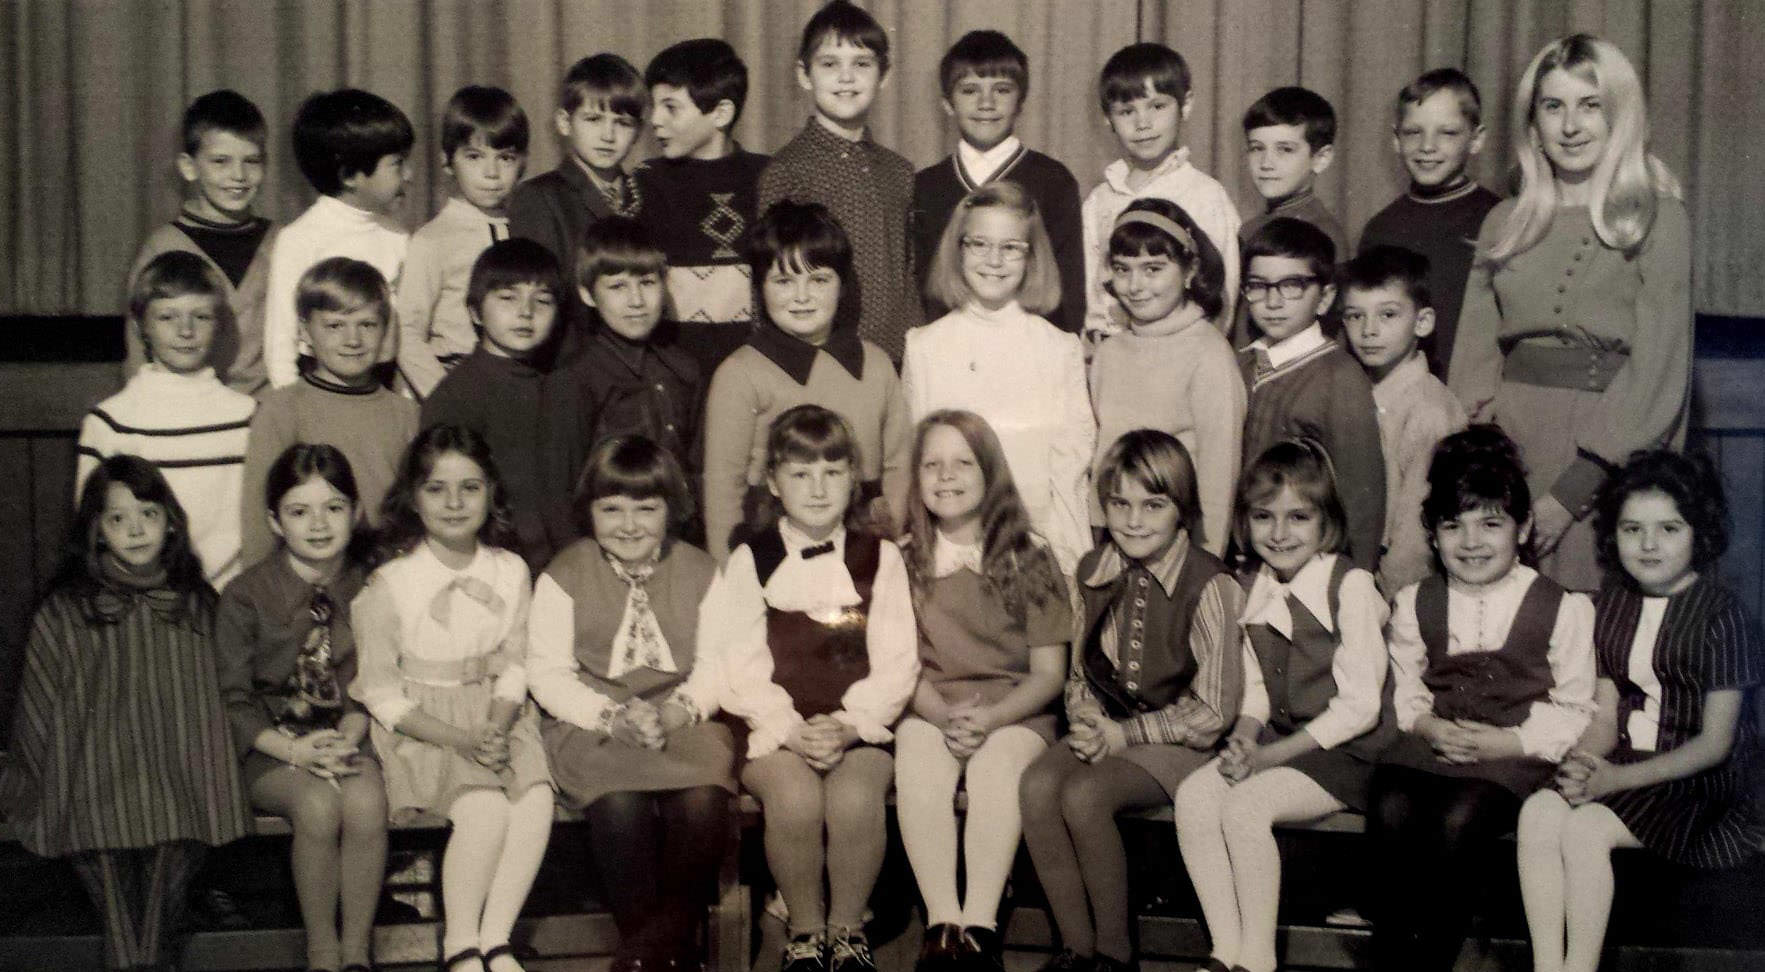 Valleyfield Public School, Etobicoke 1970